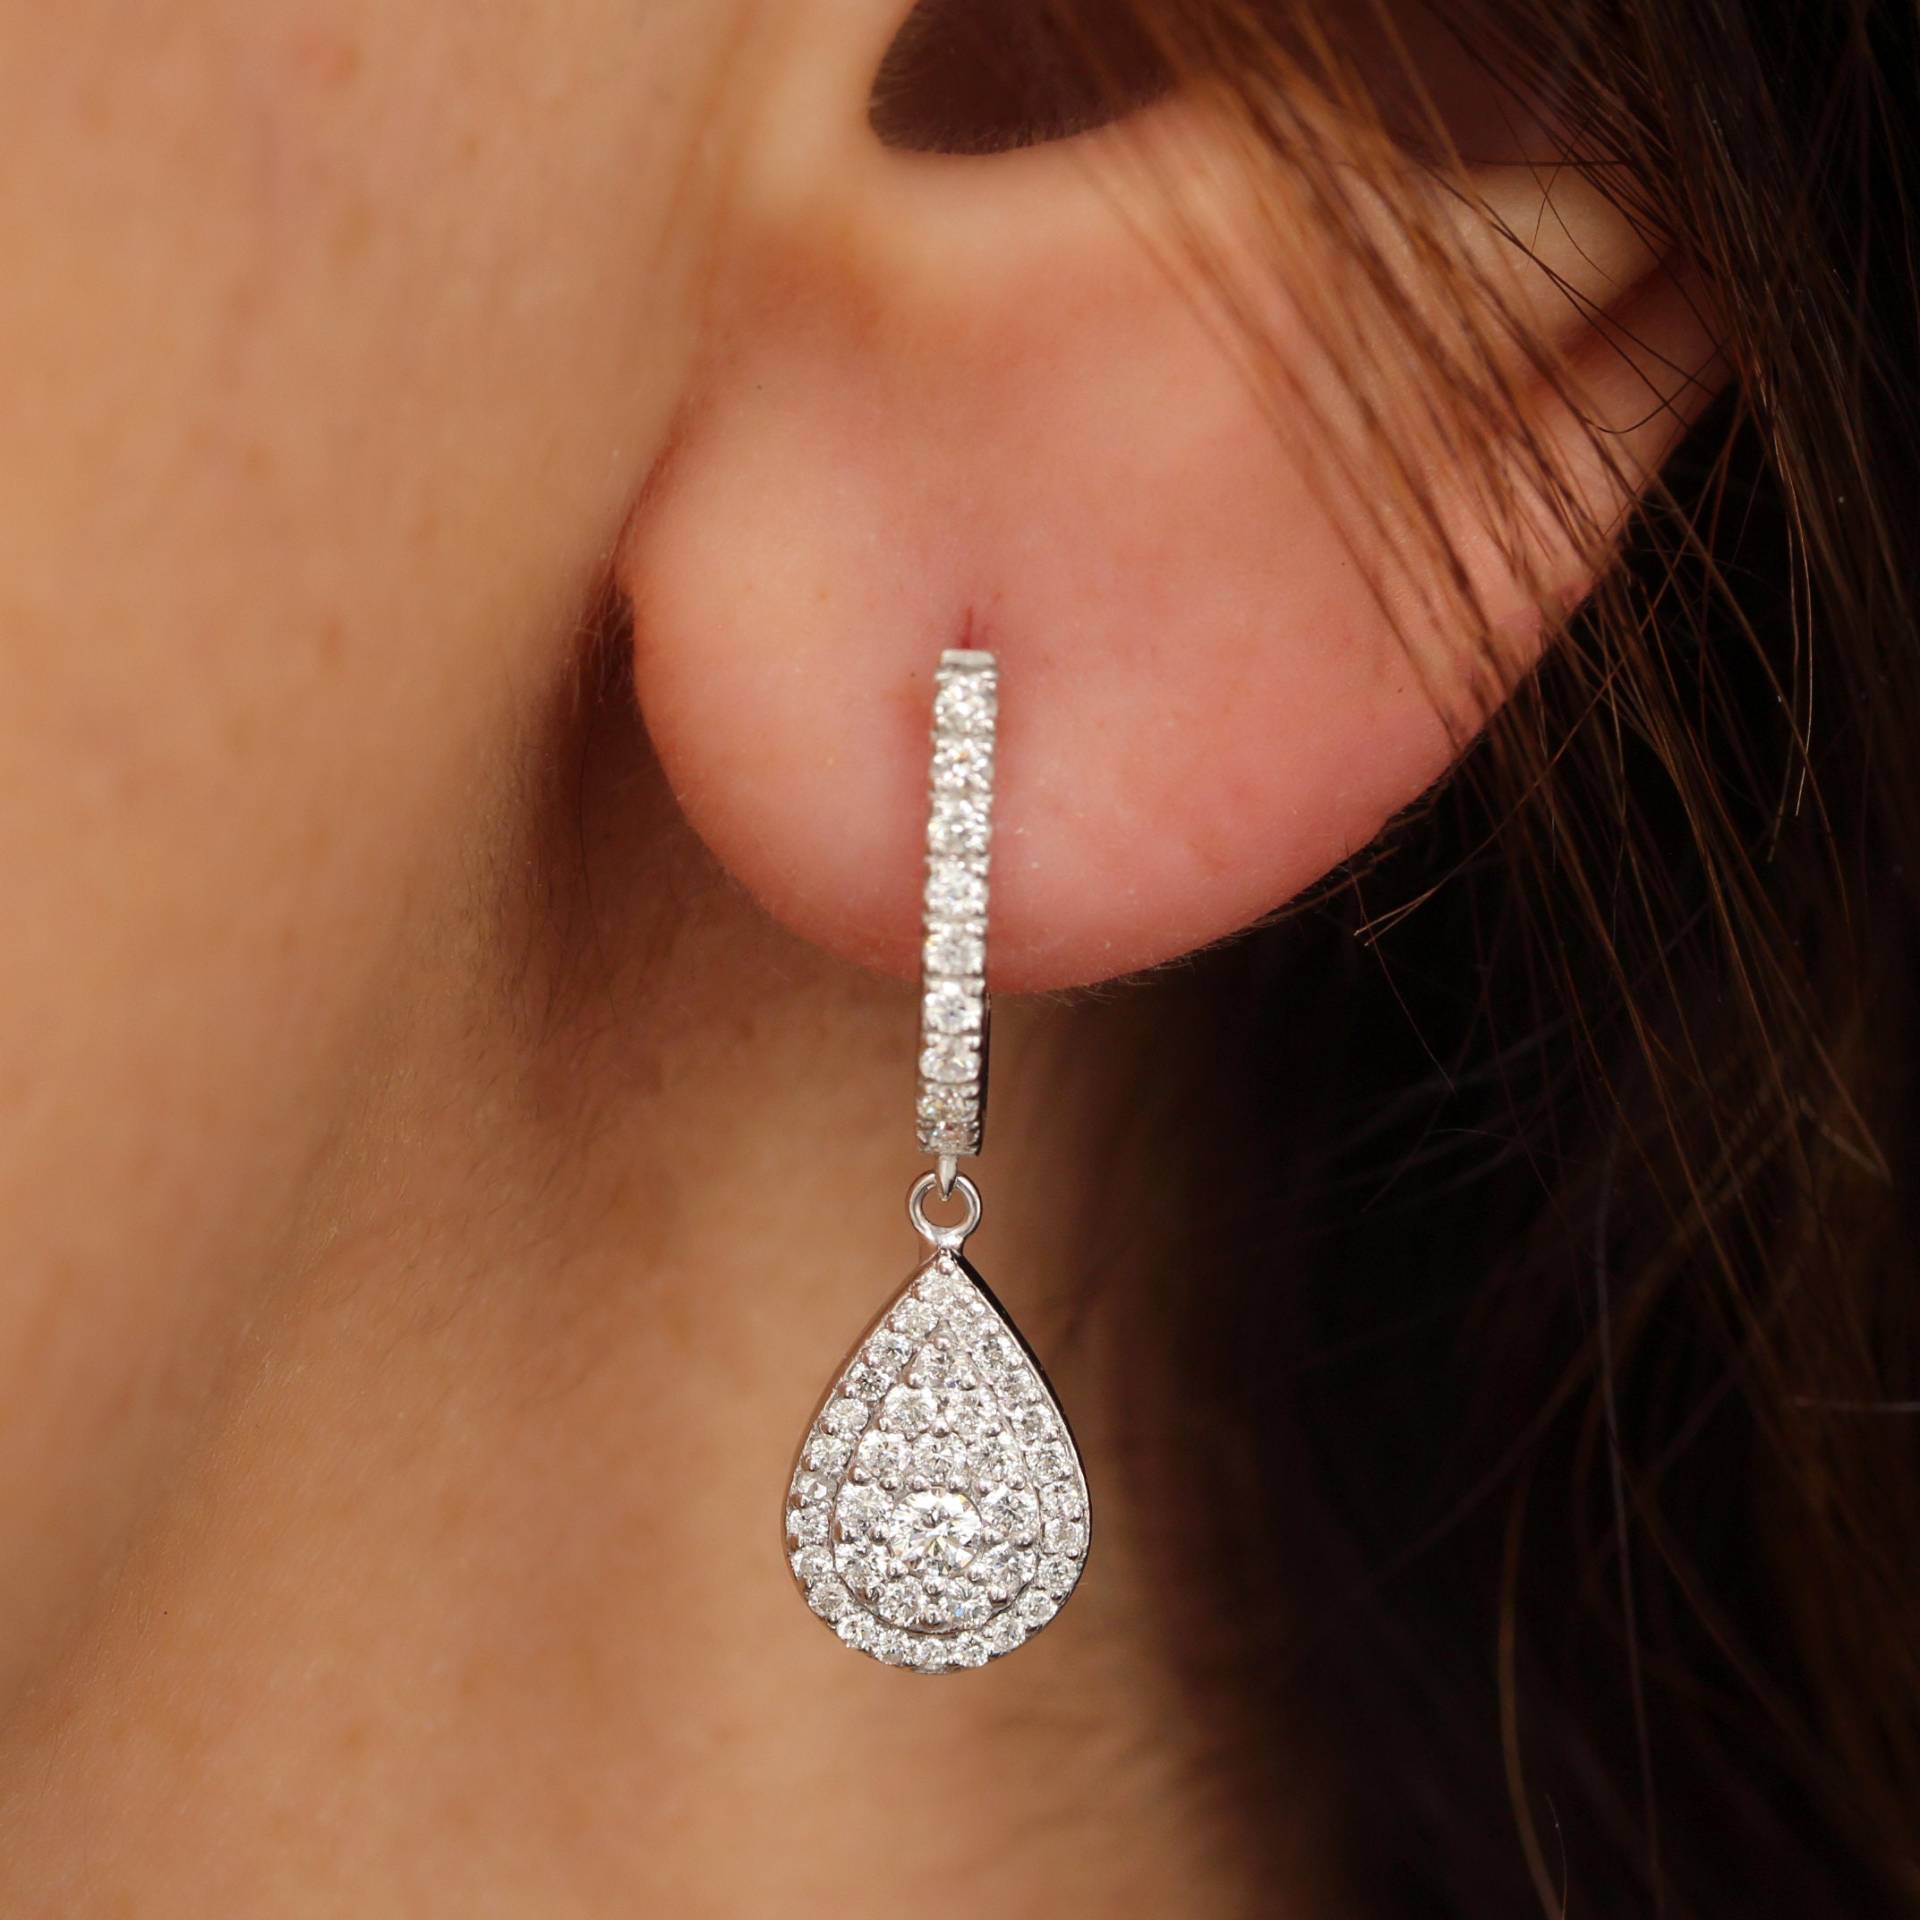 Große Pear Diamond Drops Ohrringe, Wunderschöne Wunderliche Luxuriöse Diamant Ohrringe 14K Weißgold, Geschenk Für Sie, Jubiläumsgeschenk Basic von SillyShinyGemstones